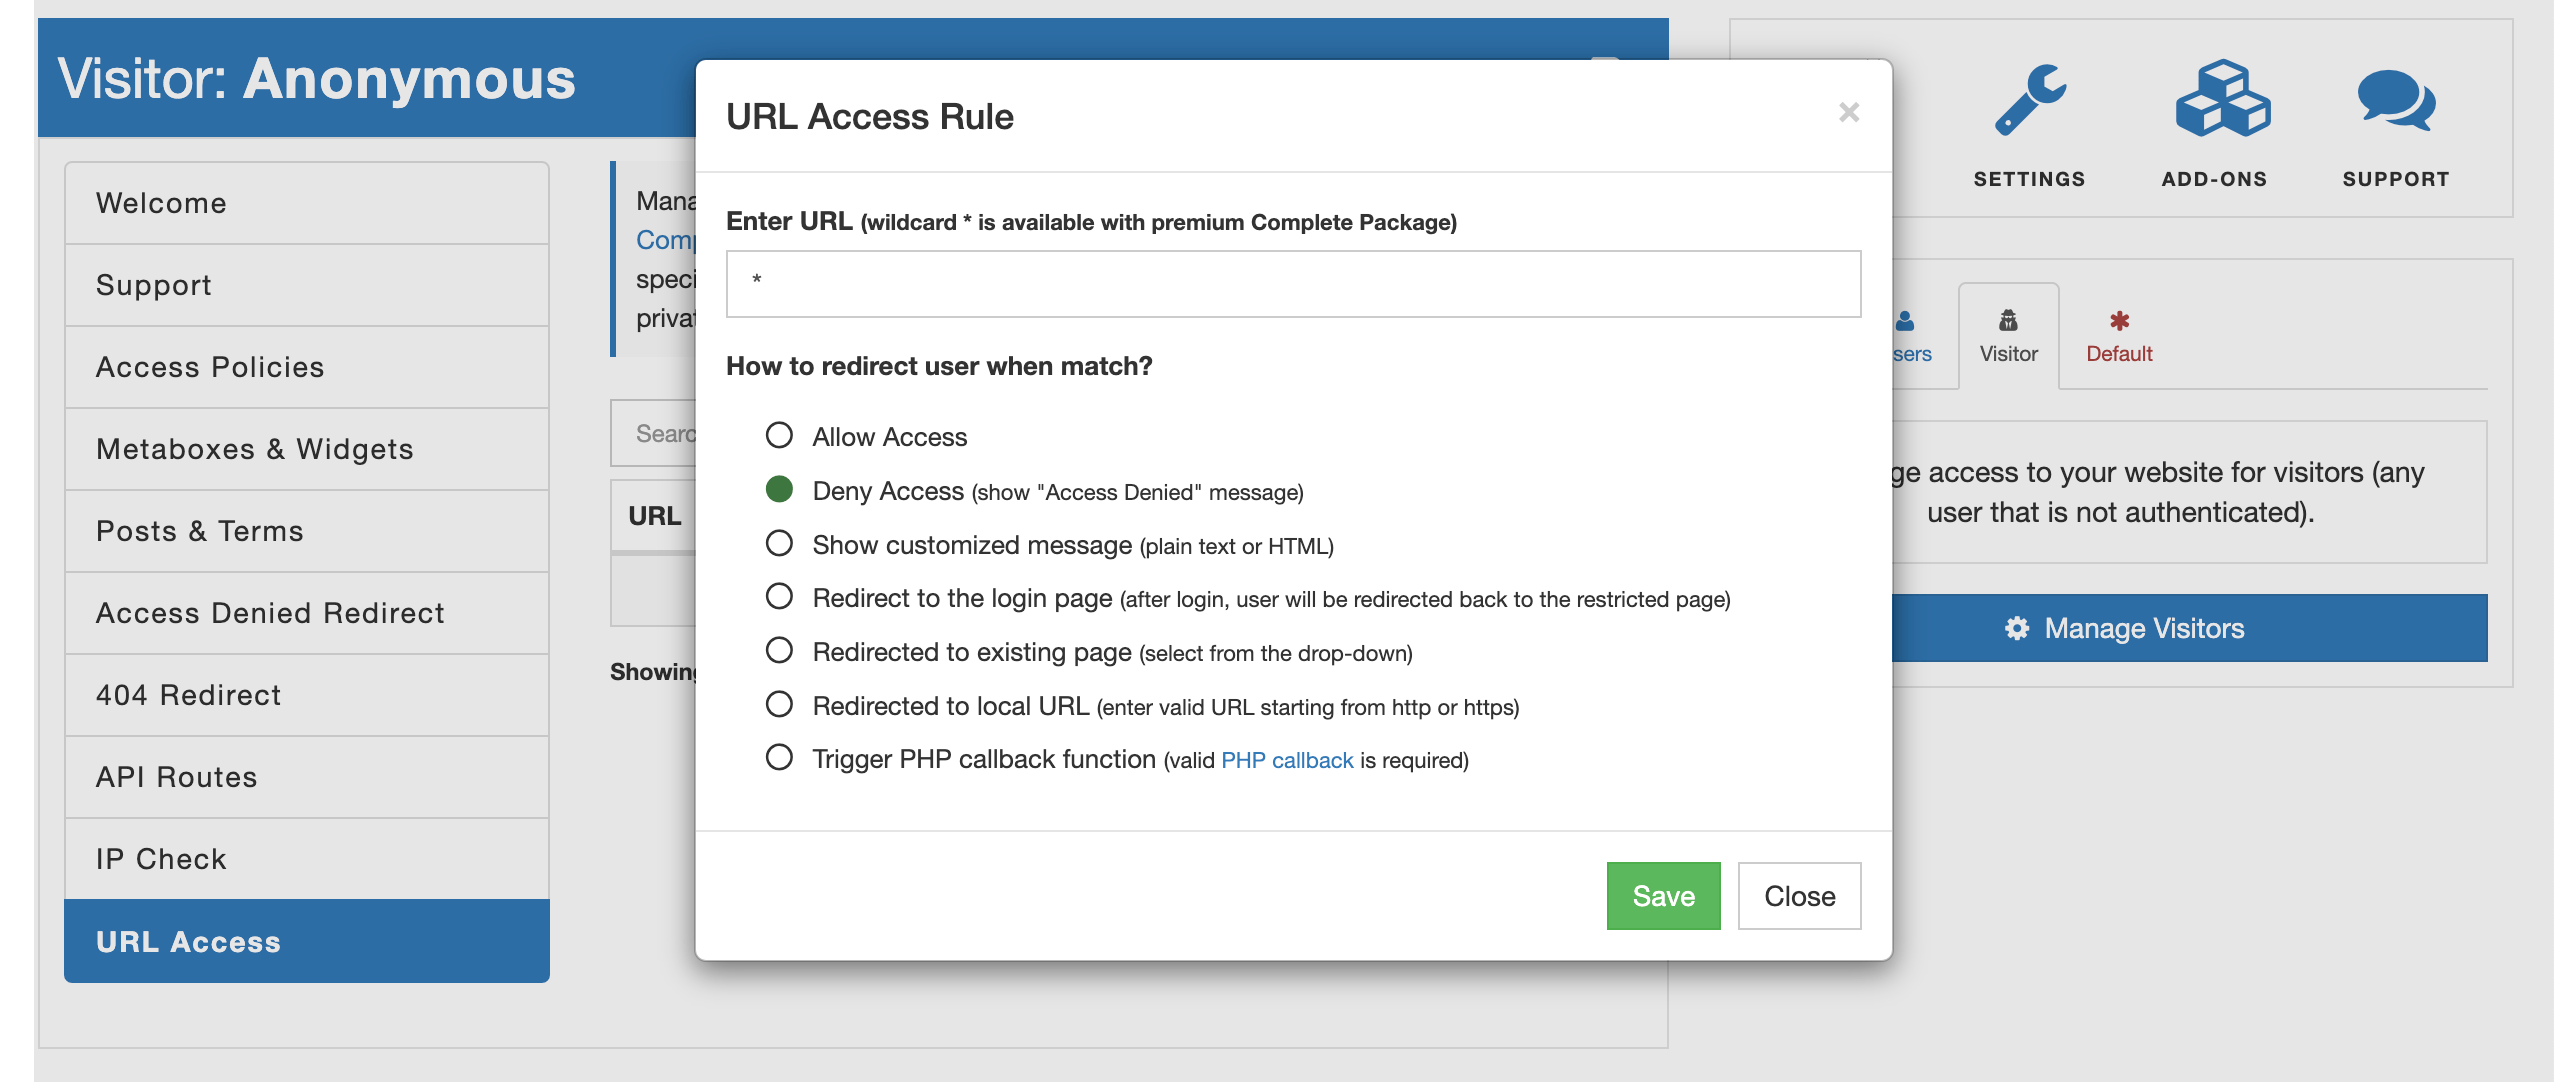 AAM Wildcard URL Access Rule